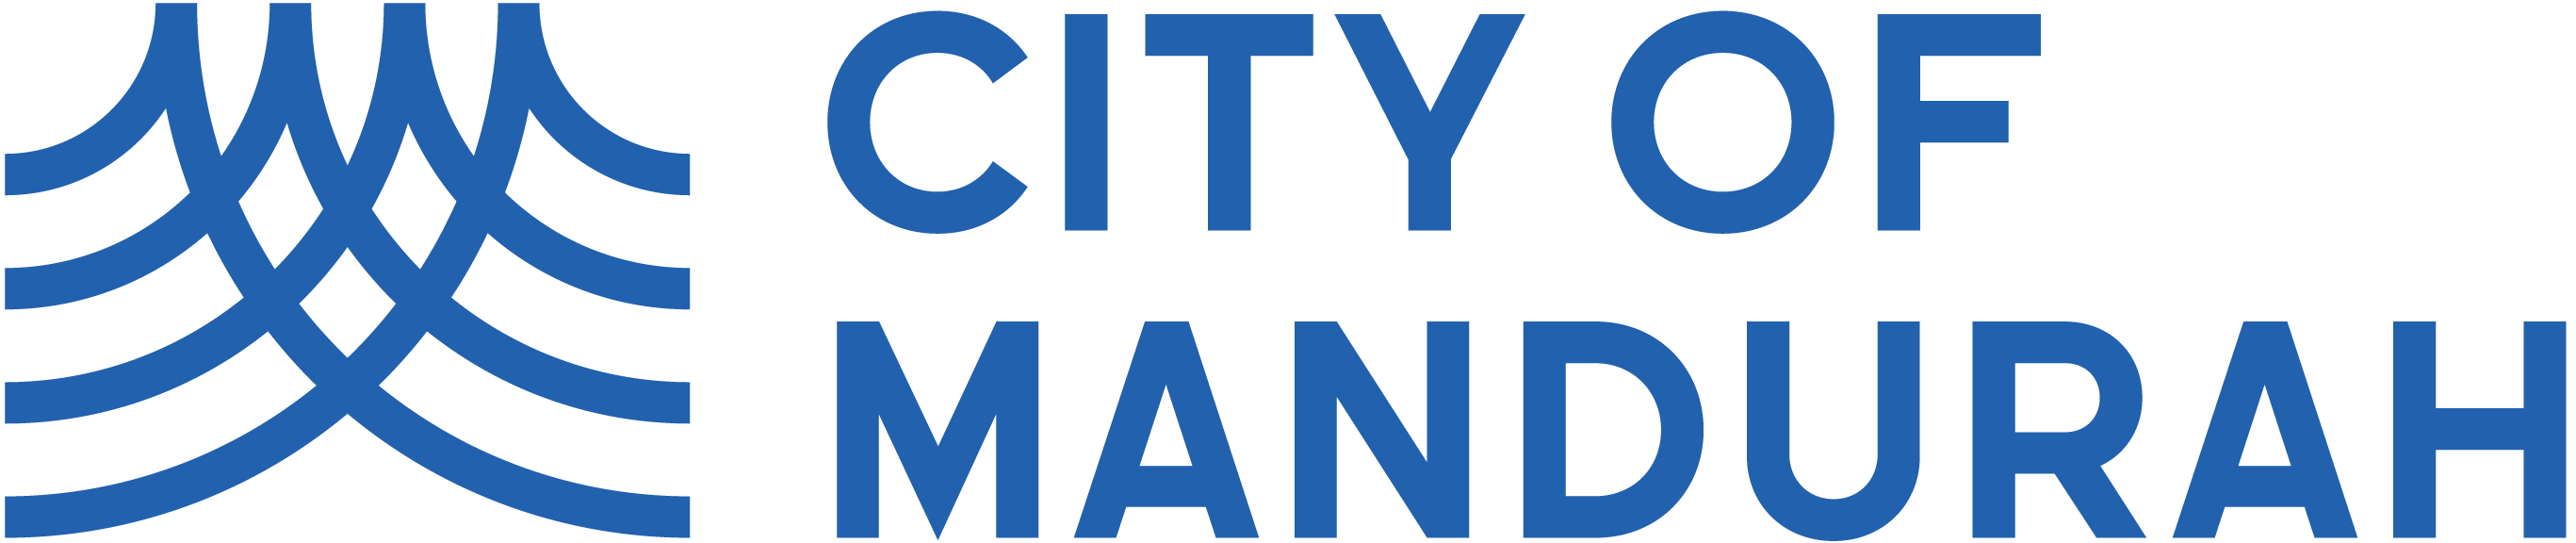 City of Mandurah logo. Click to go to Home page